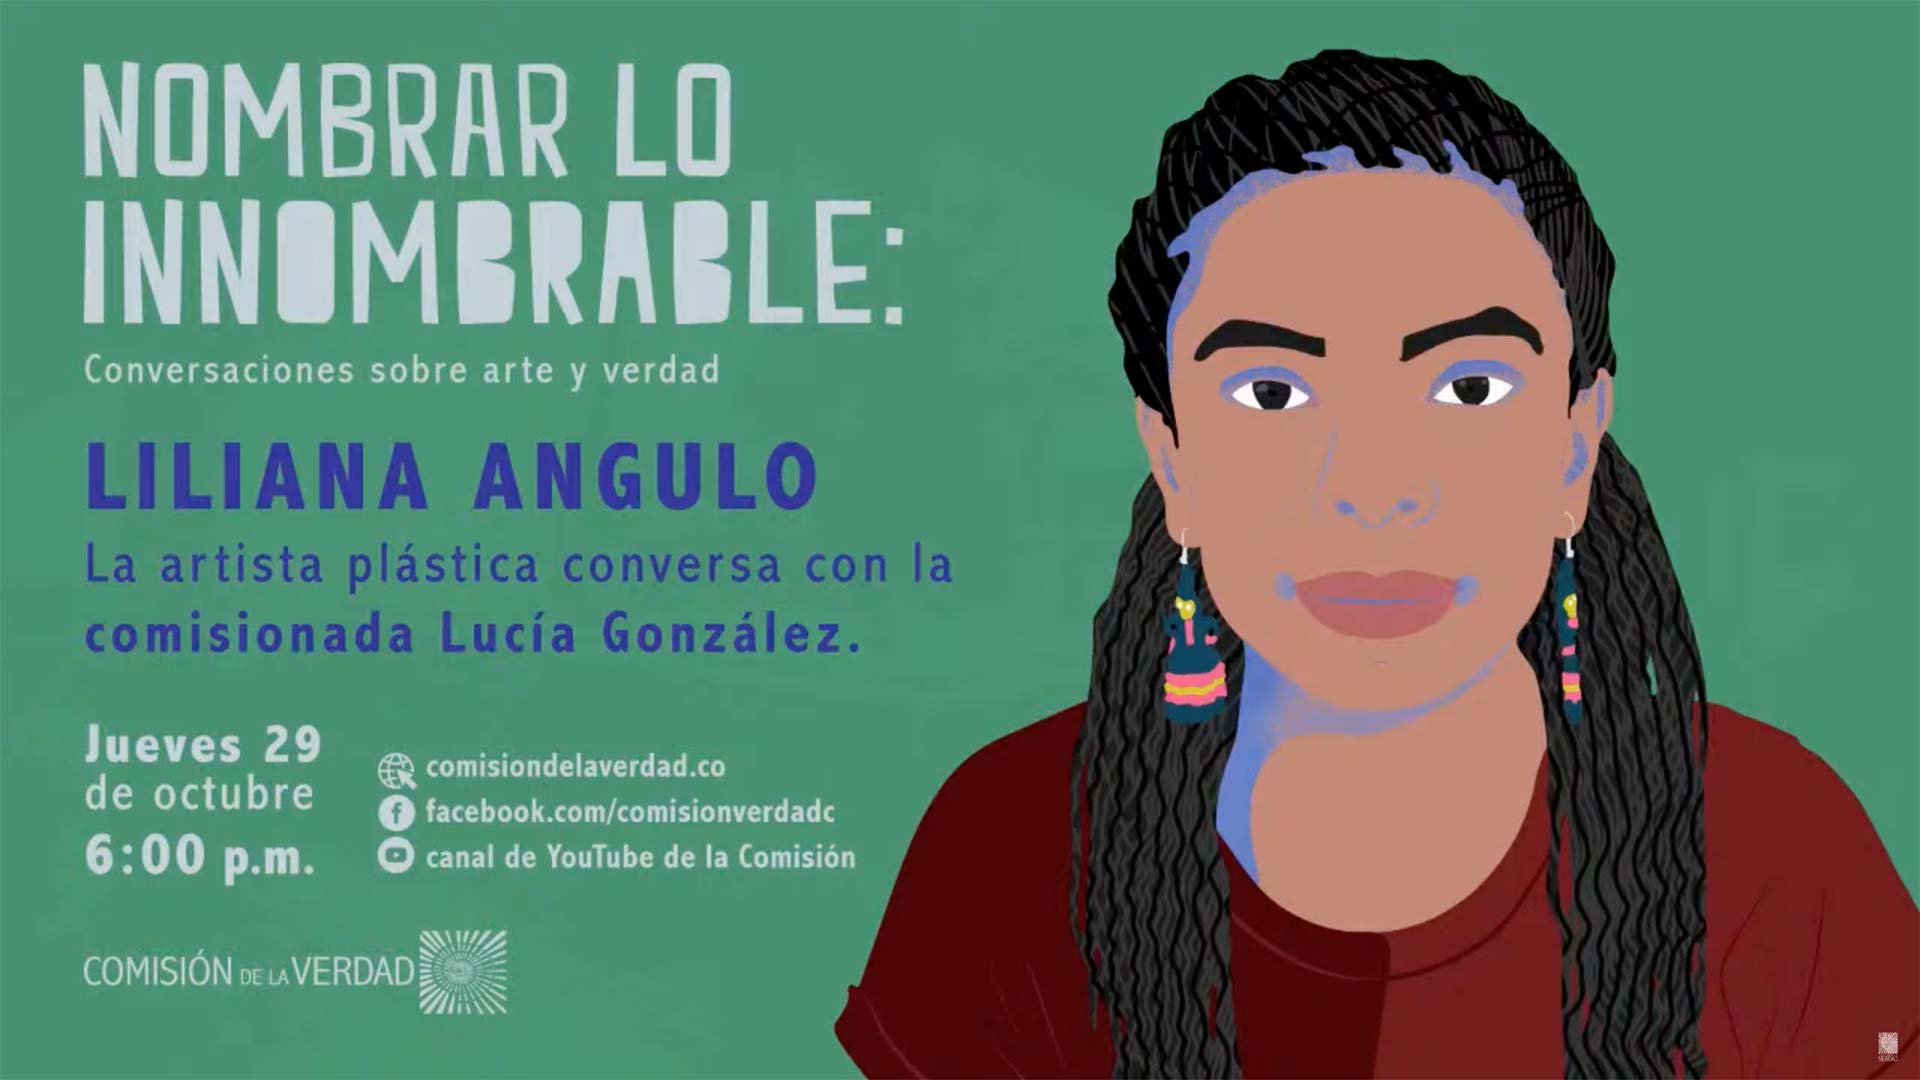 La artista plástica conversa con la comisionada Lucía González.